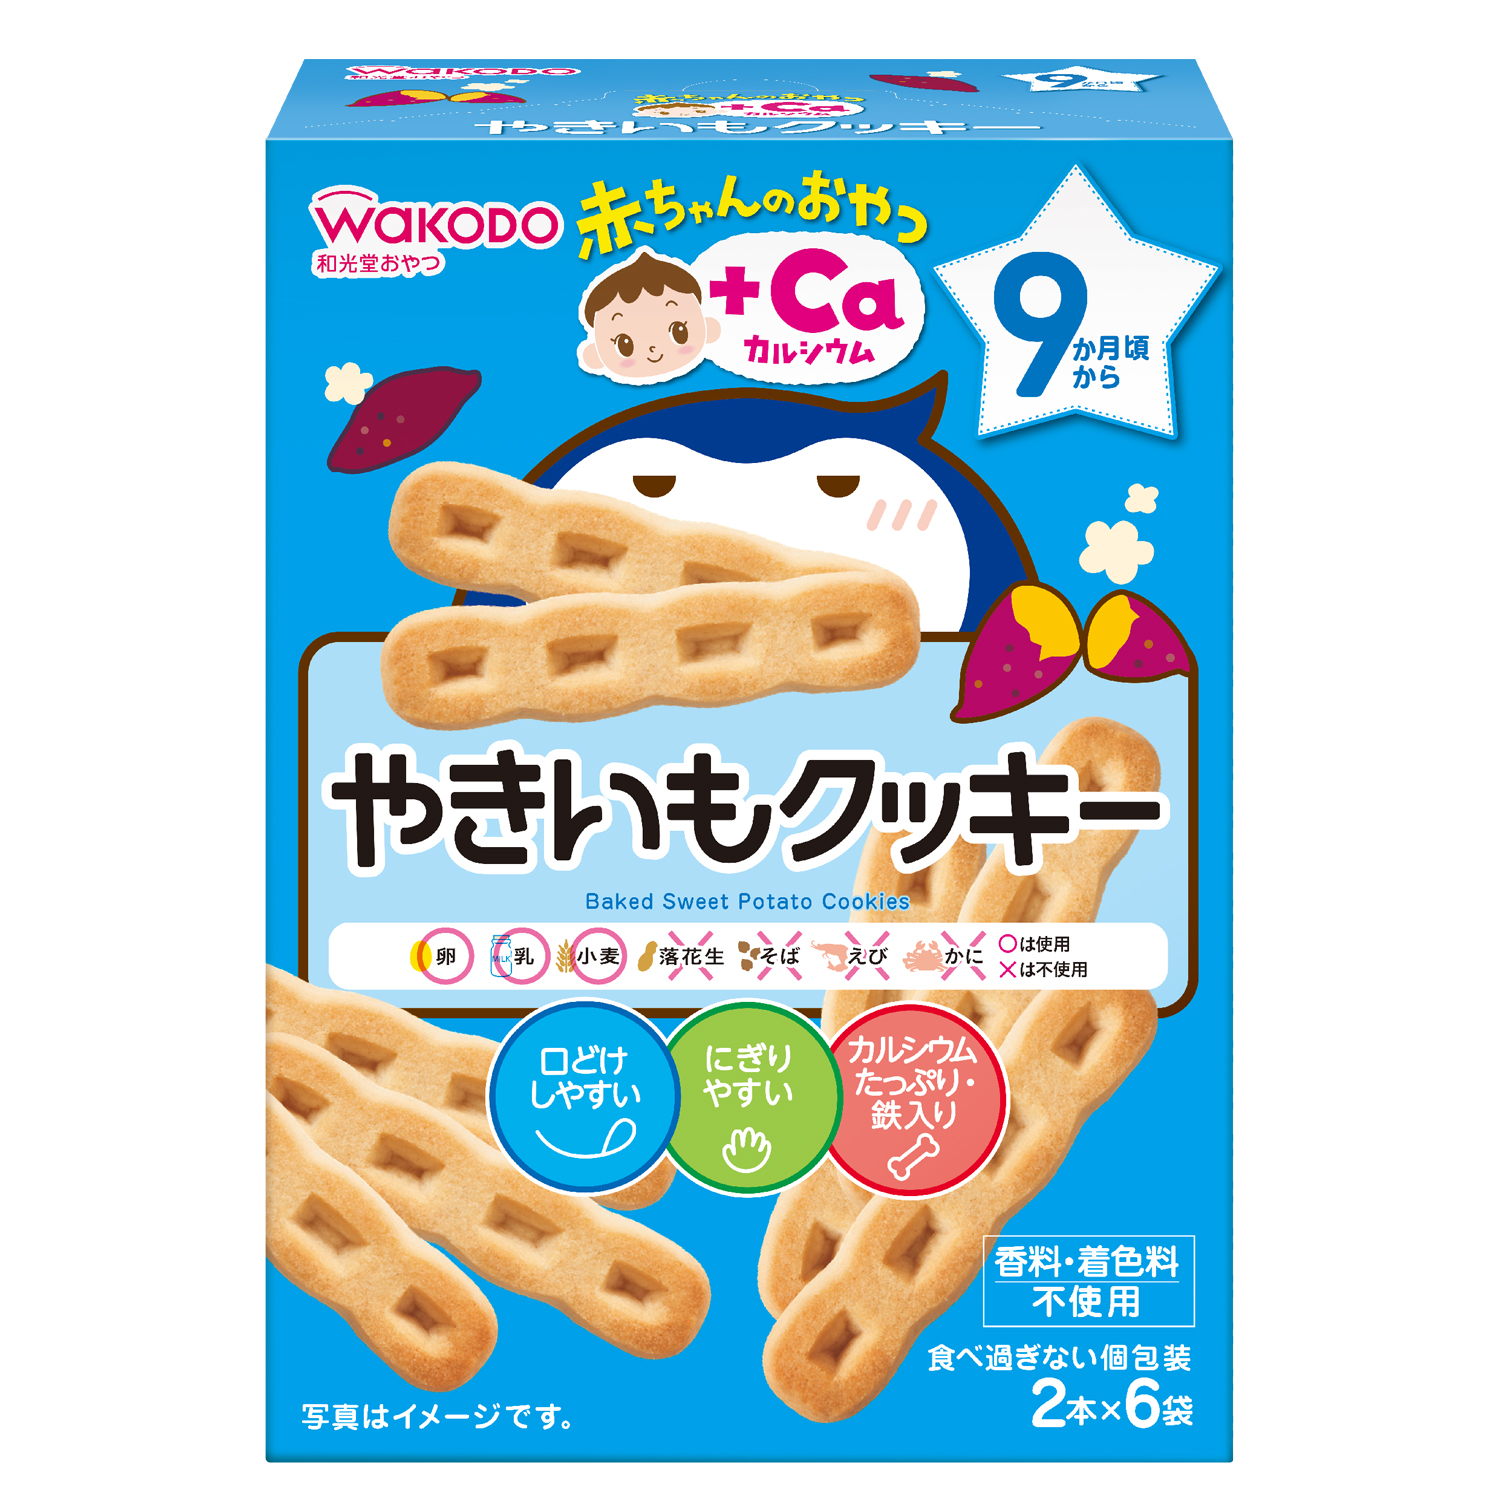 WAKODO Japanese Baked Sweet Potato Cookies (Bundle of 6)